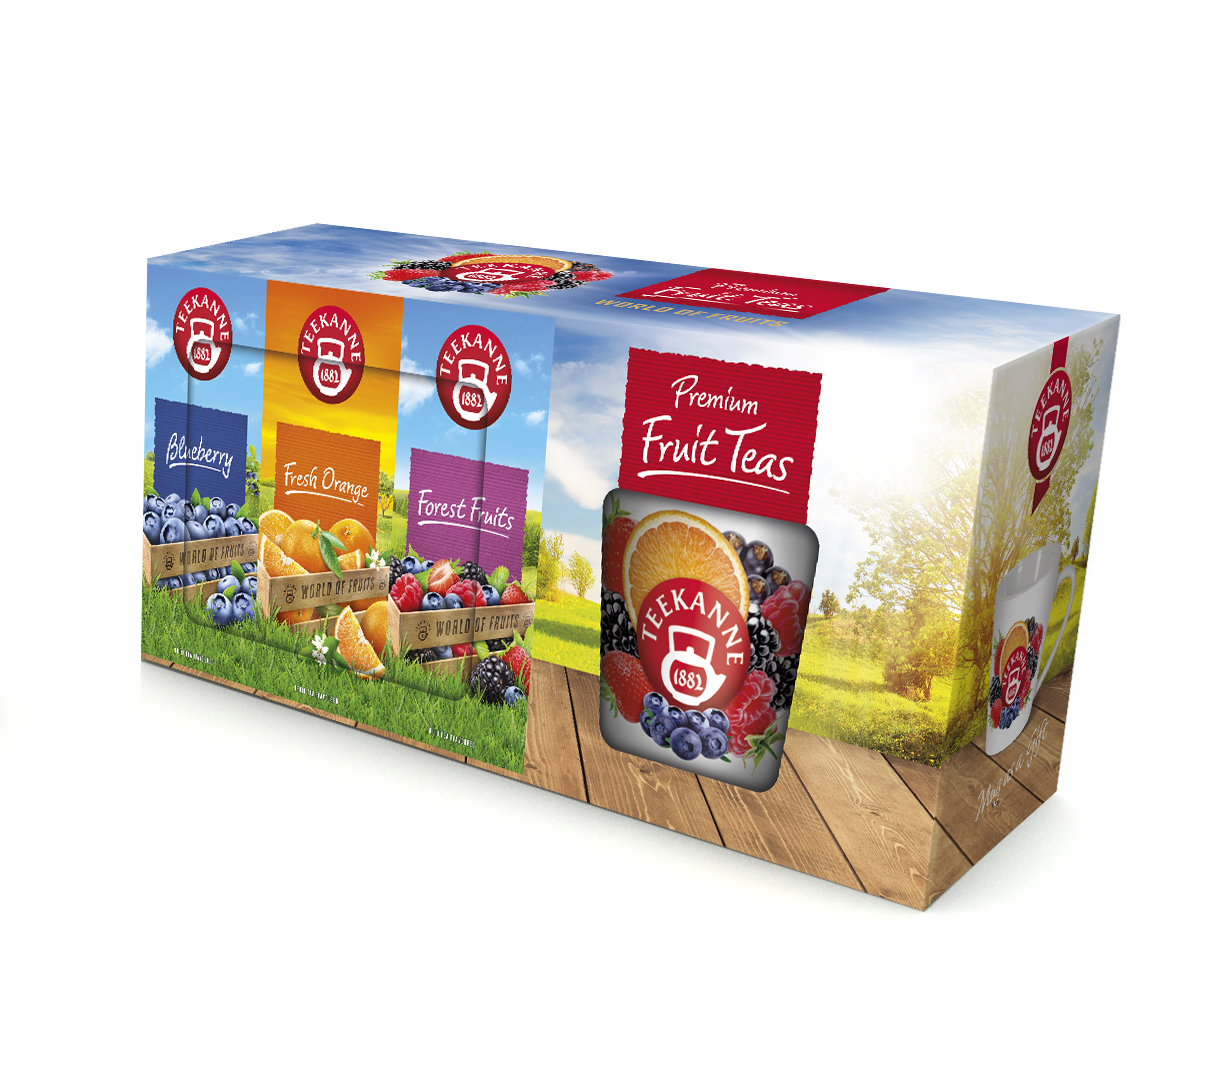 Teekanne Premium Fruit Teas 3x20 sáčků + hrnek Teekanne